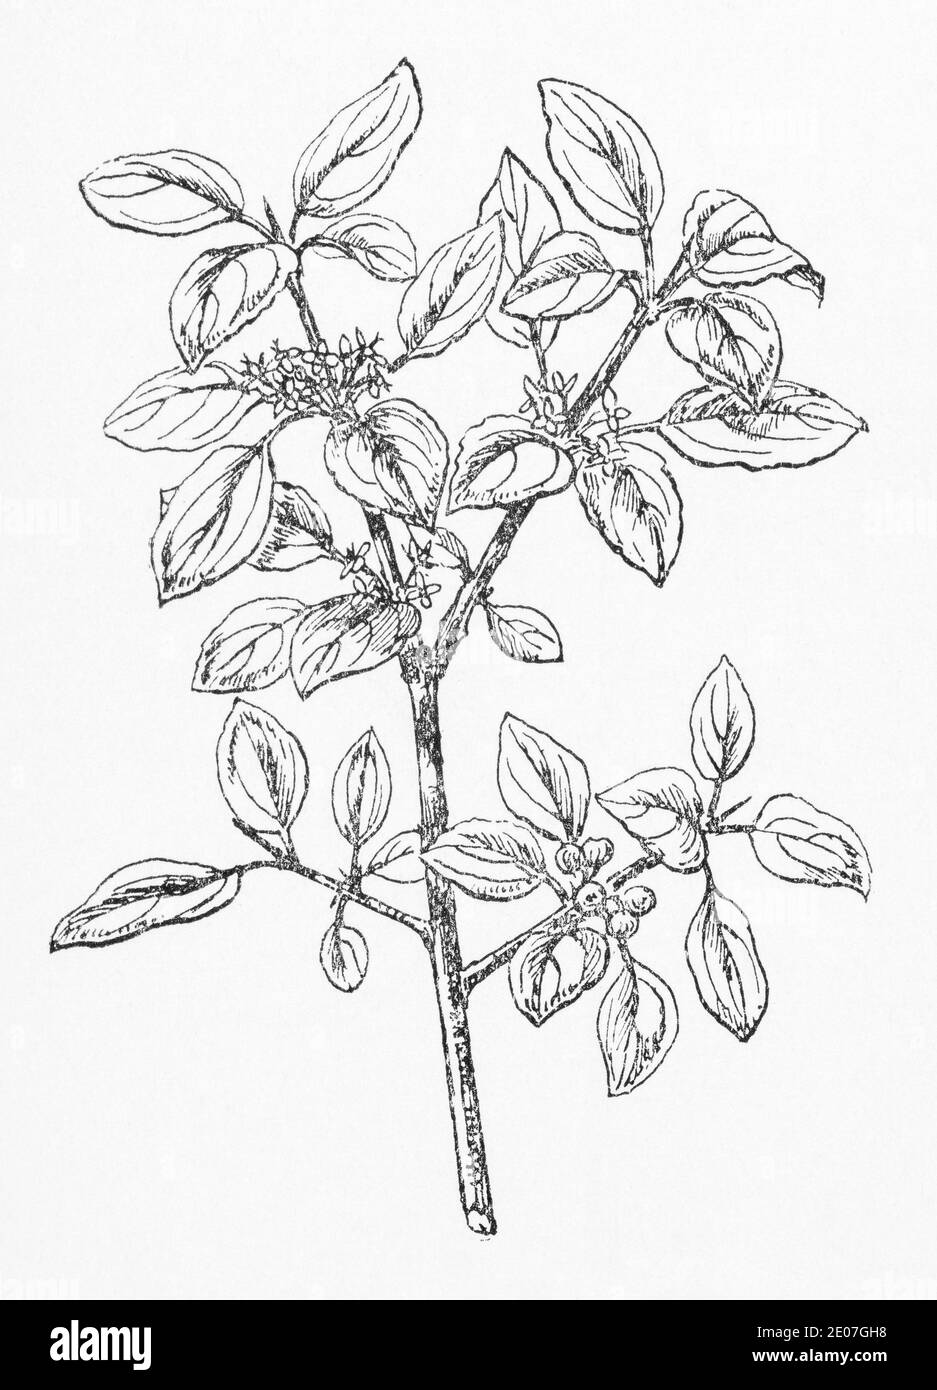 Alte botanische Illustration Gravur von Purging Buckthorn / Rhamnus cathartica, Rhamnus catharticus. Traditionelle Heilkräuter Pflanze. Siehe Hinweise Stockfoto